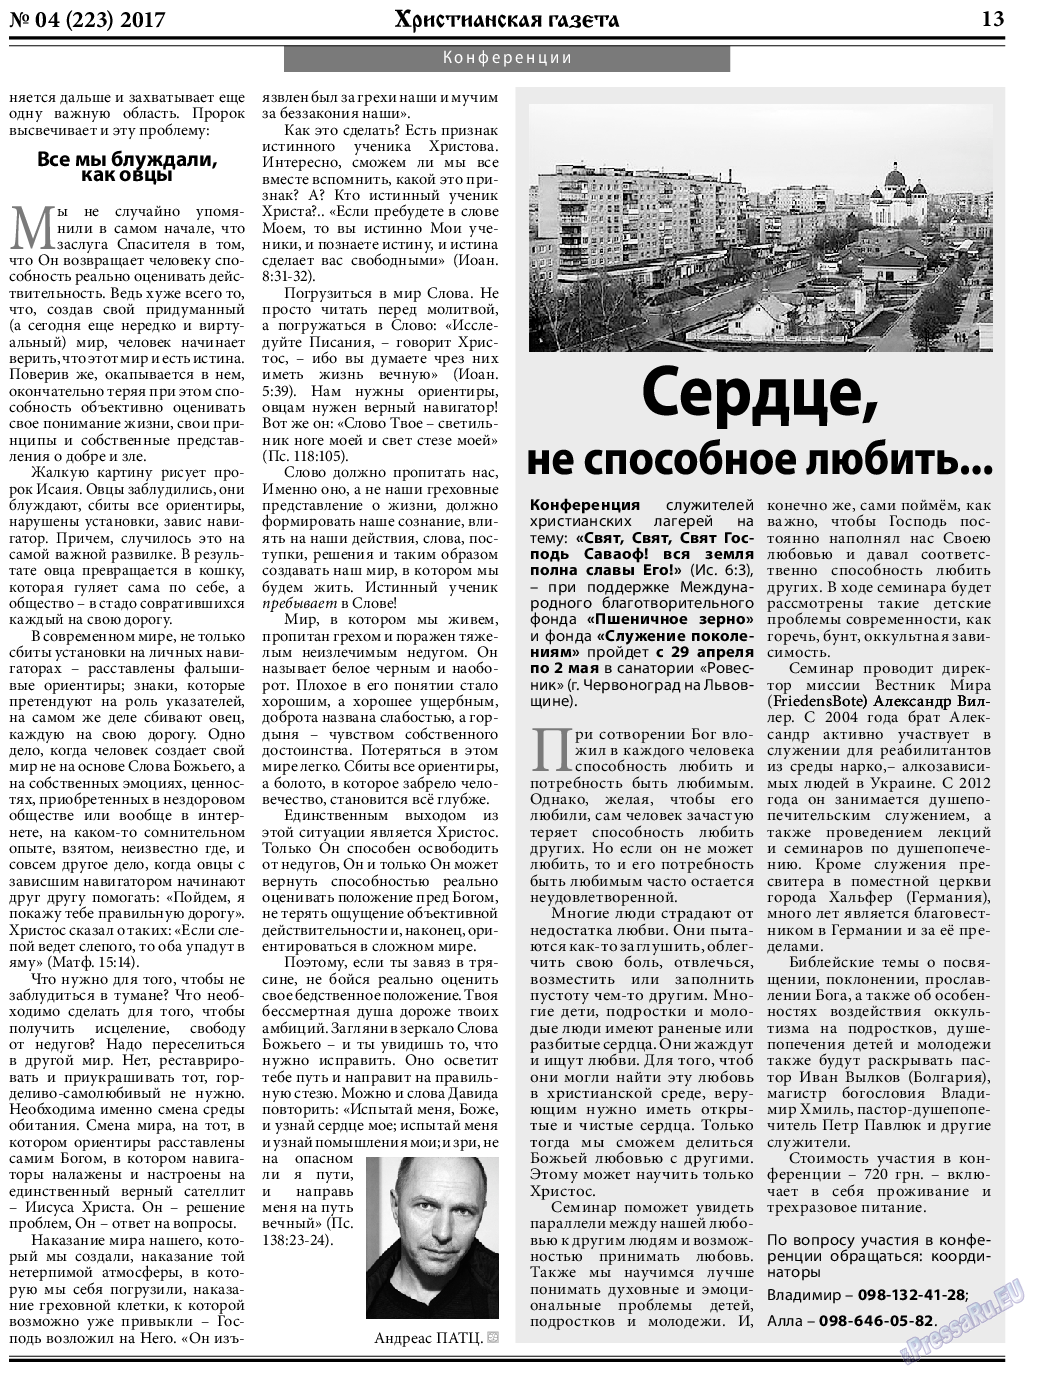 Христианская газета, газета. 2017 №4 стр.13